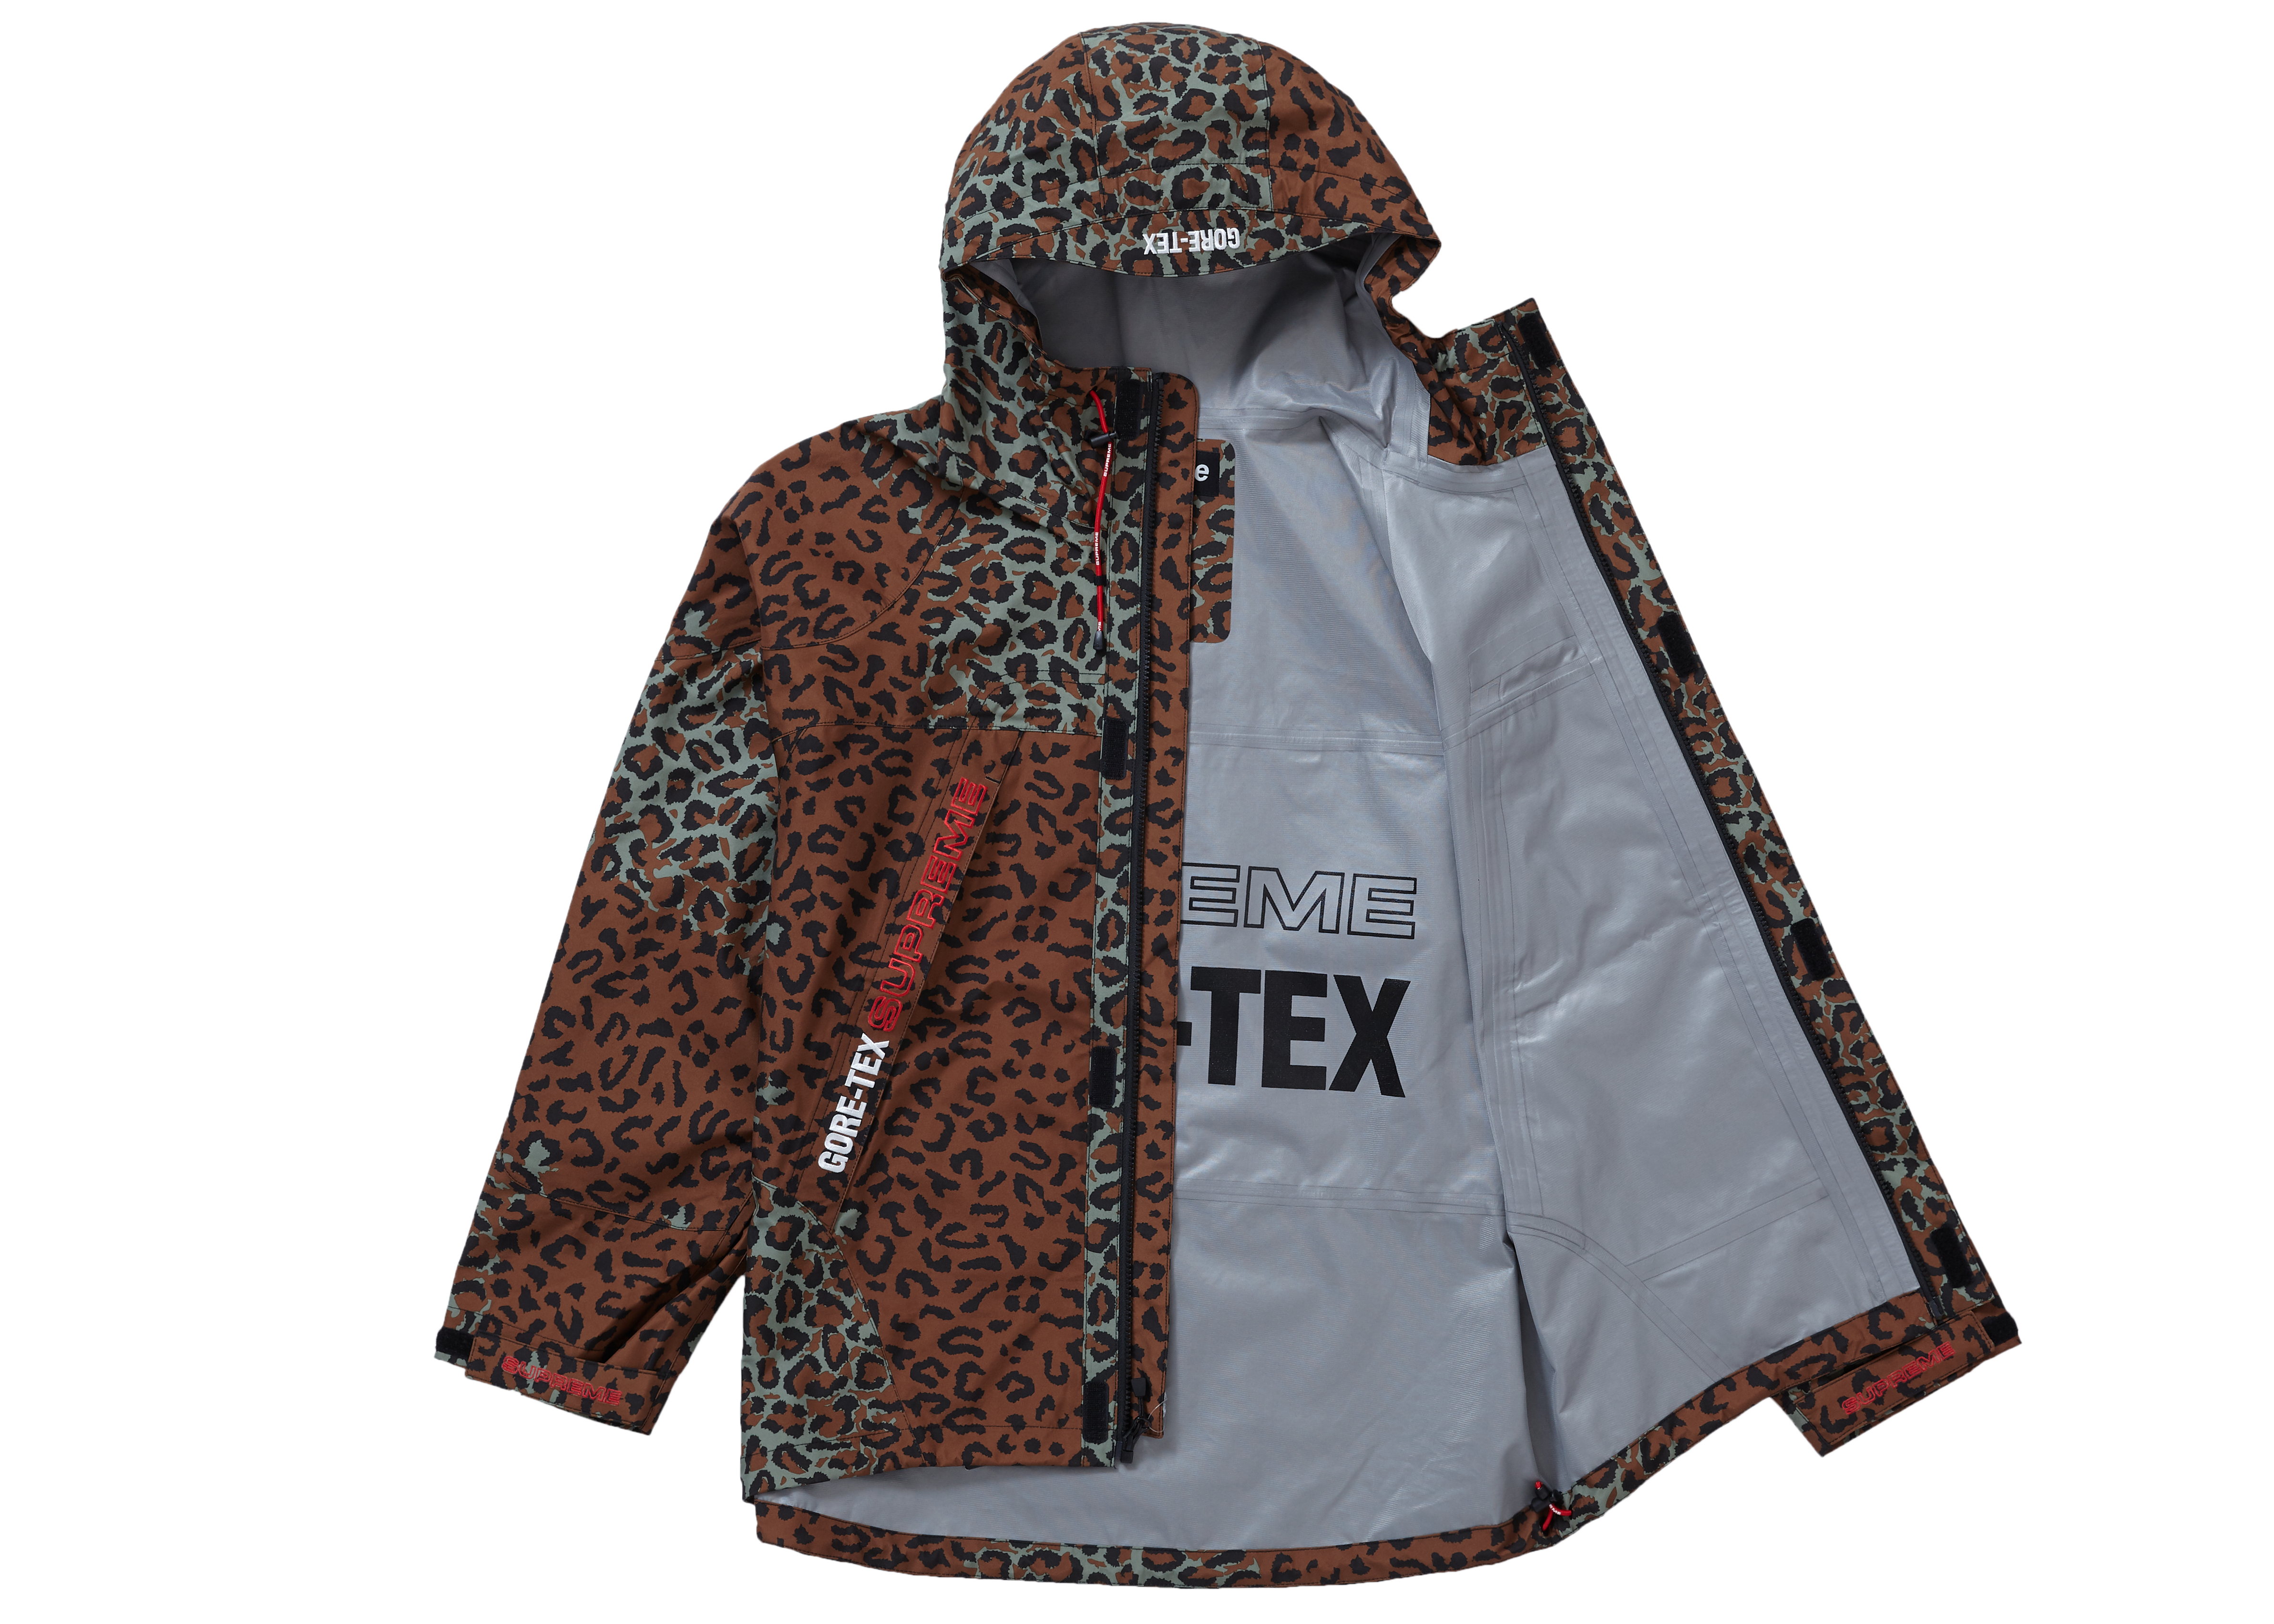 supreme leopard jacket